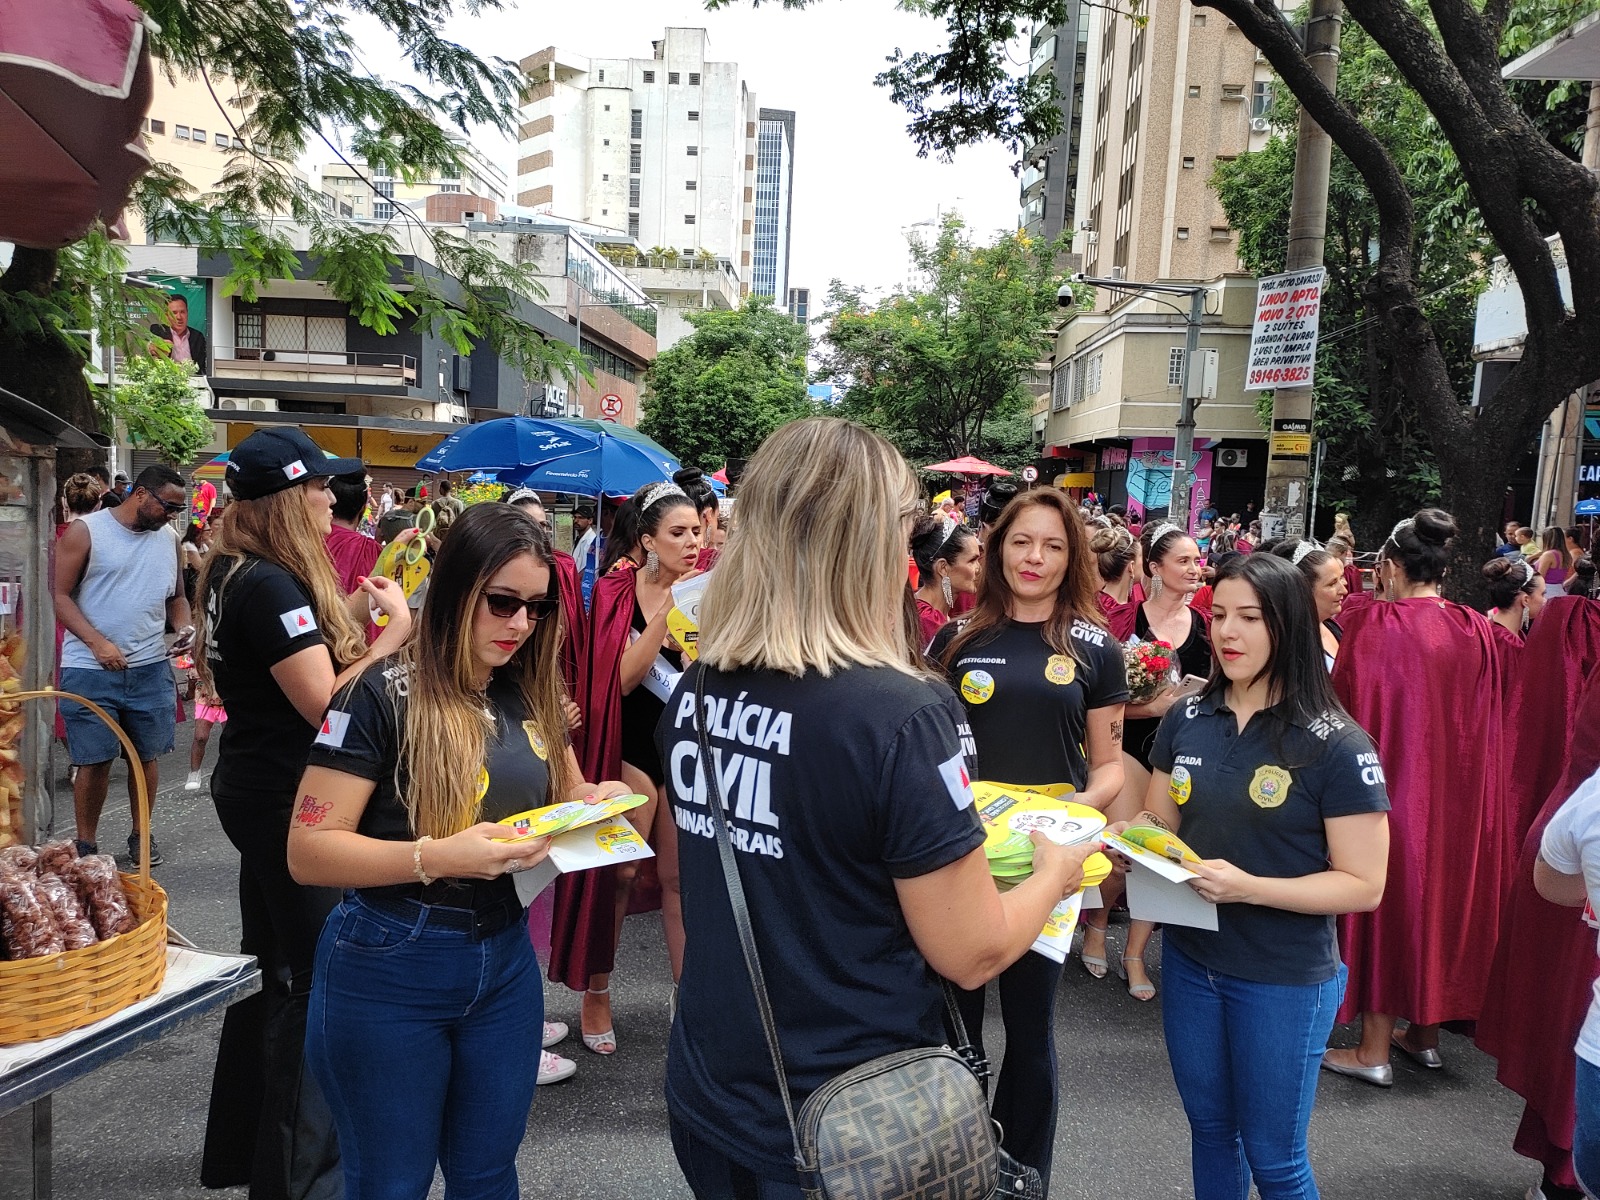 Polícia Civil se mobiliza para um Carnaval seguro em Minas